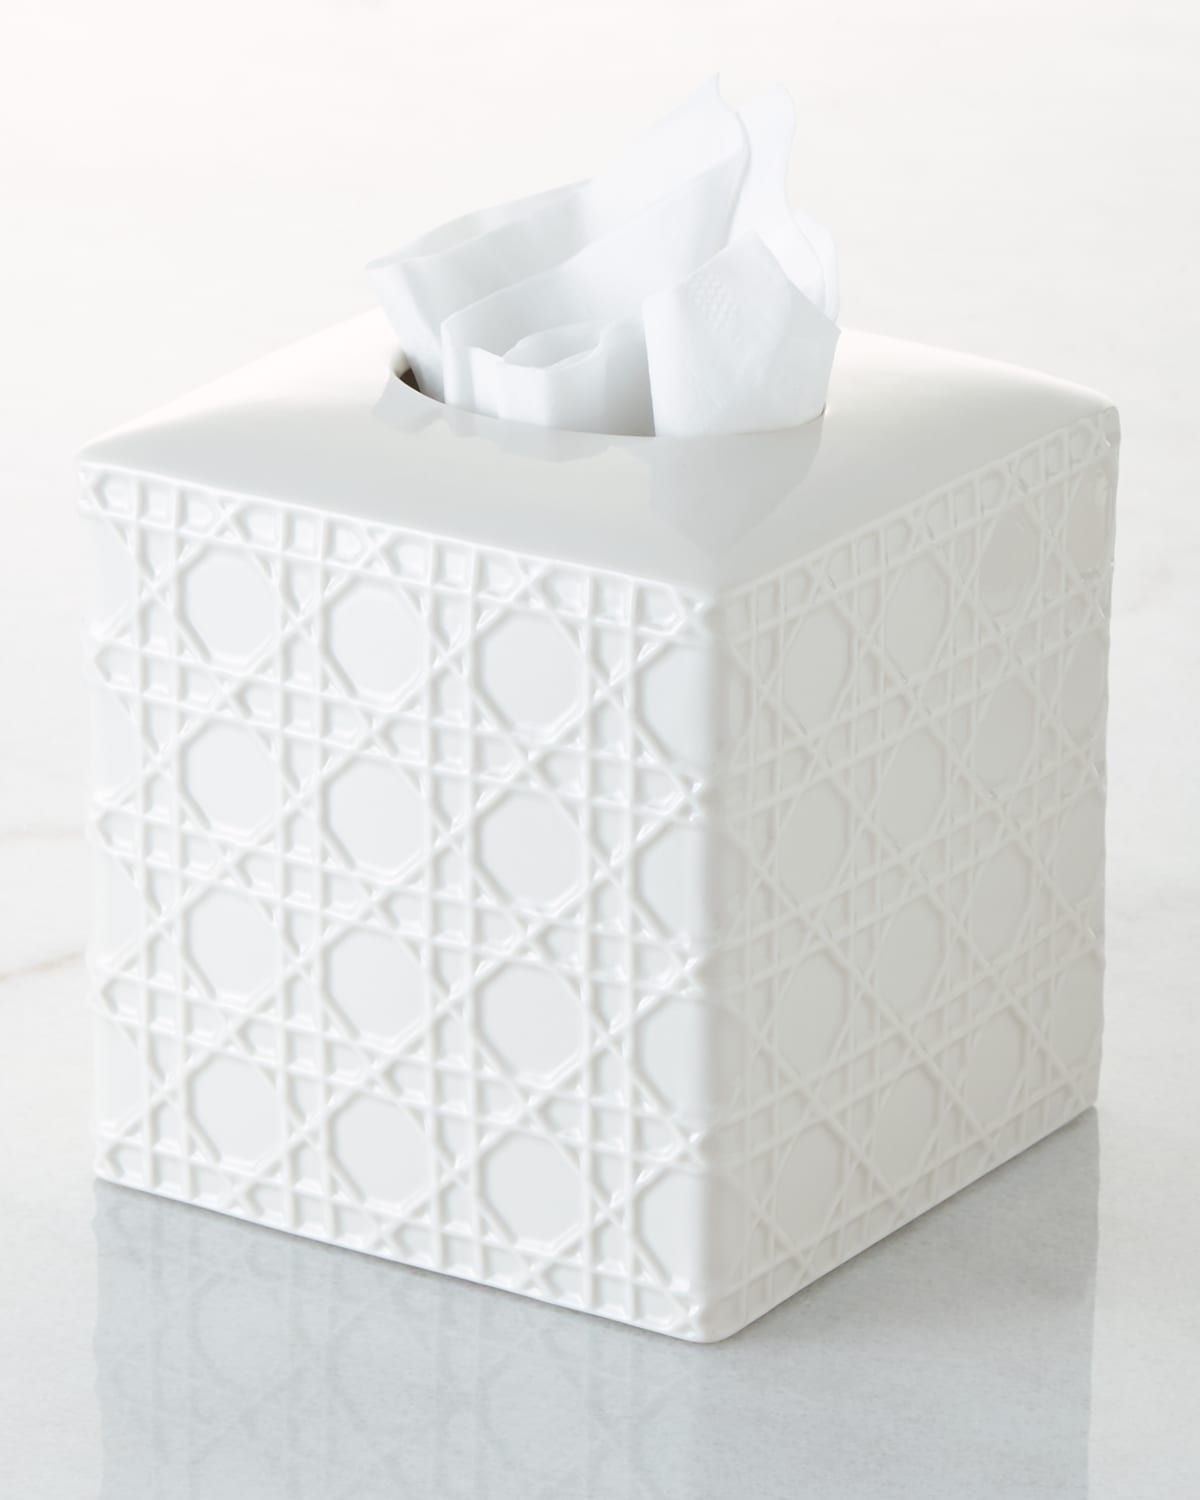 Kassatex Cane Embossed Porcelain Tissue Box Cover In White